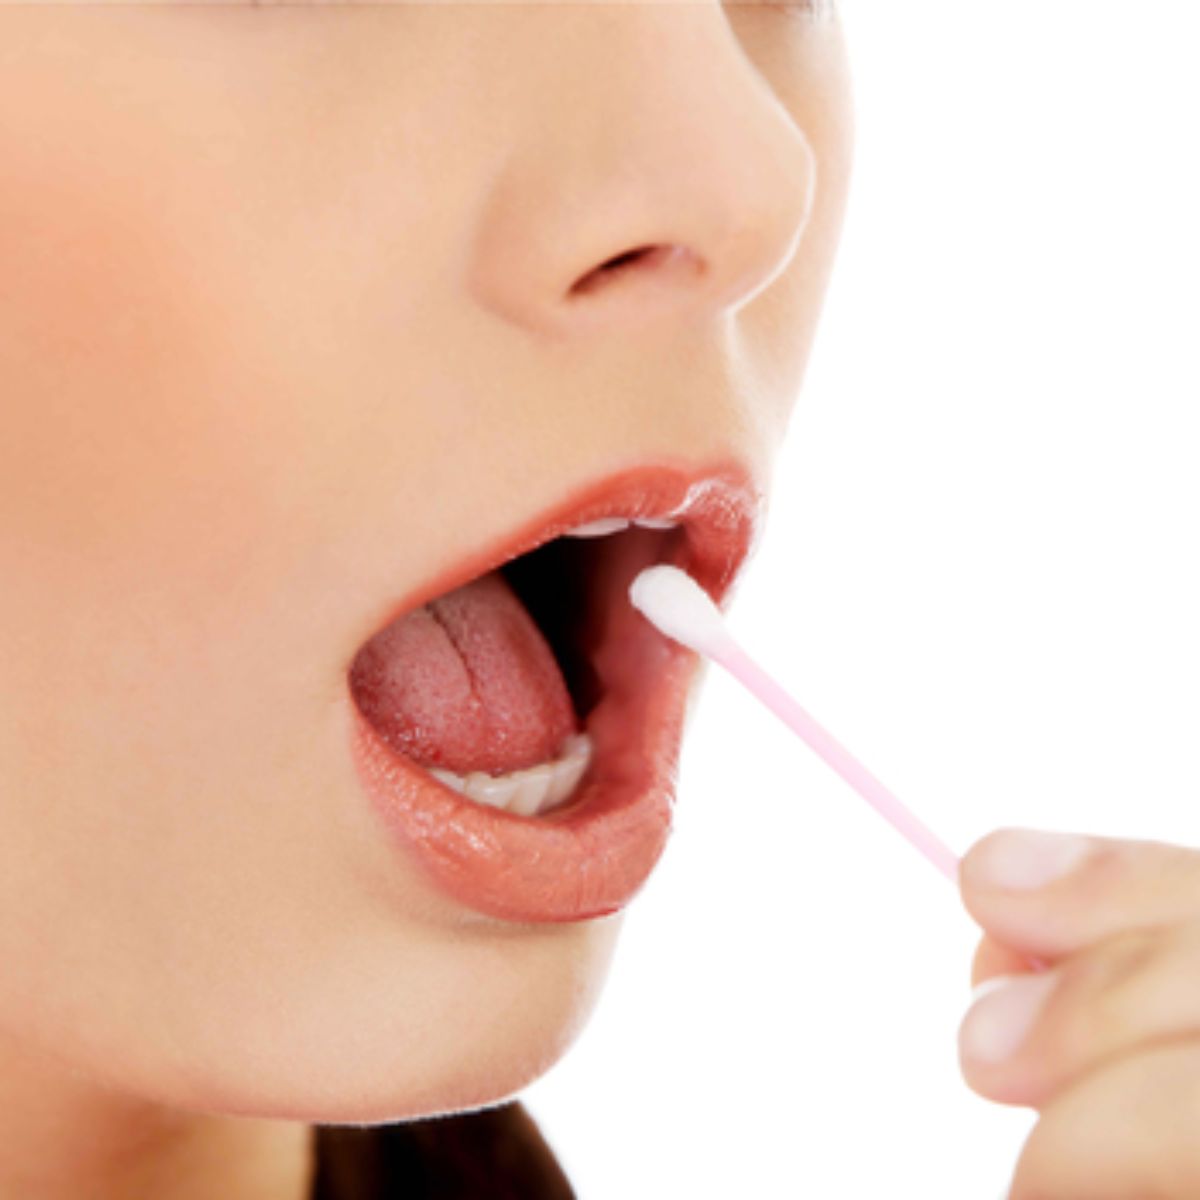 ➤ Test de drogas en saliva ¿Cuánto dura? - Instituto Castelao